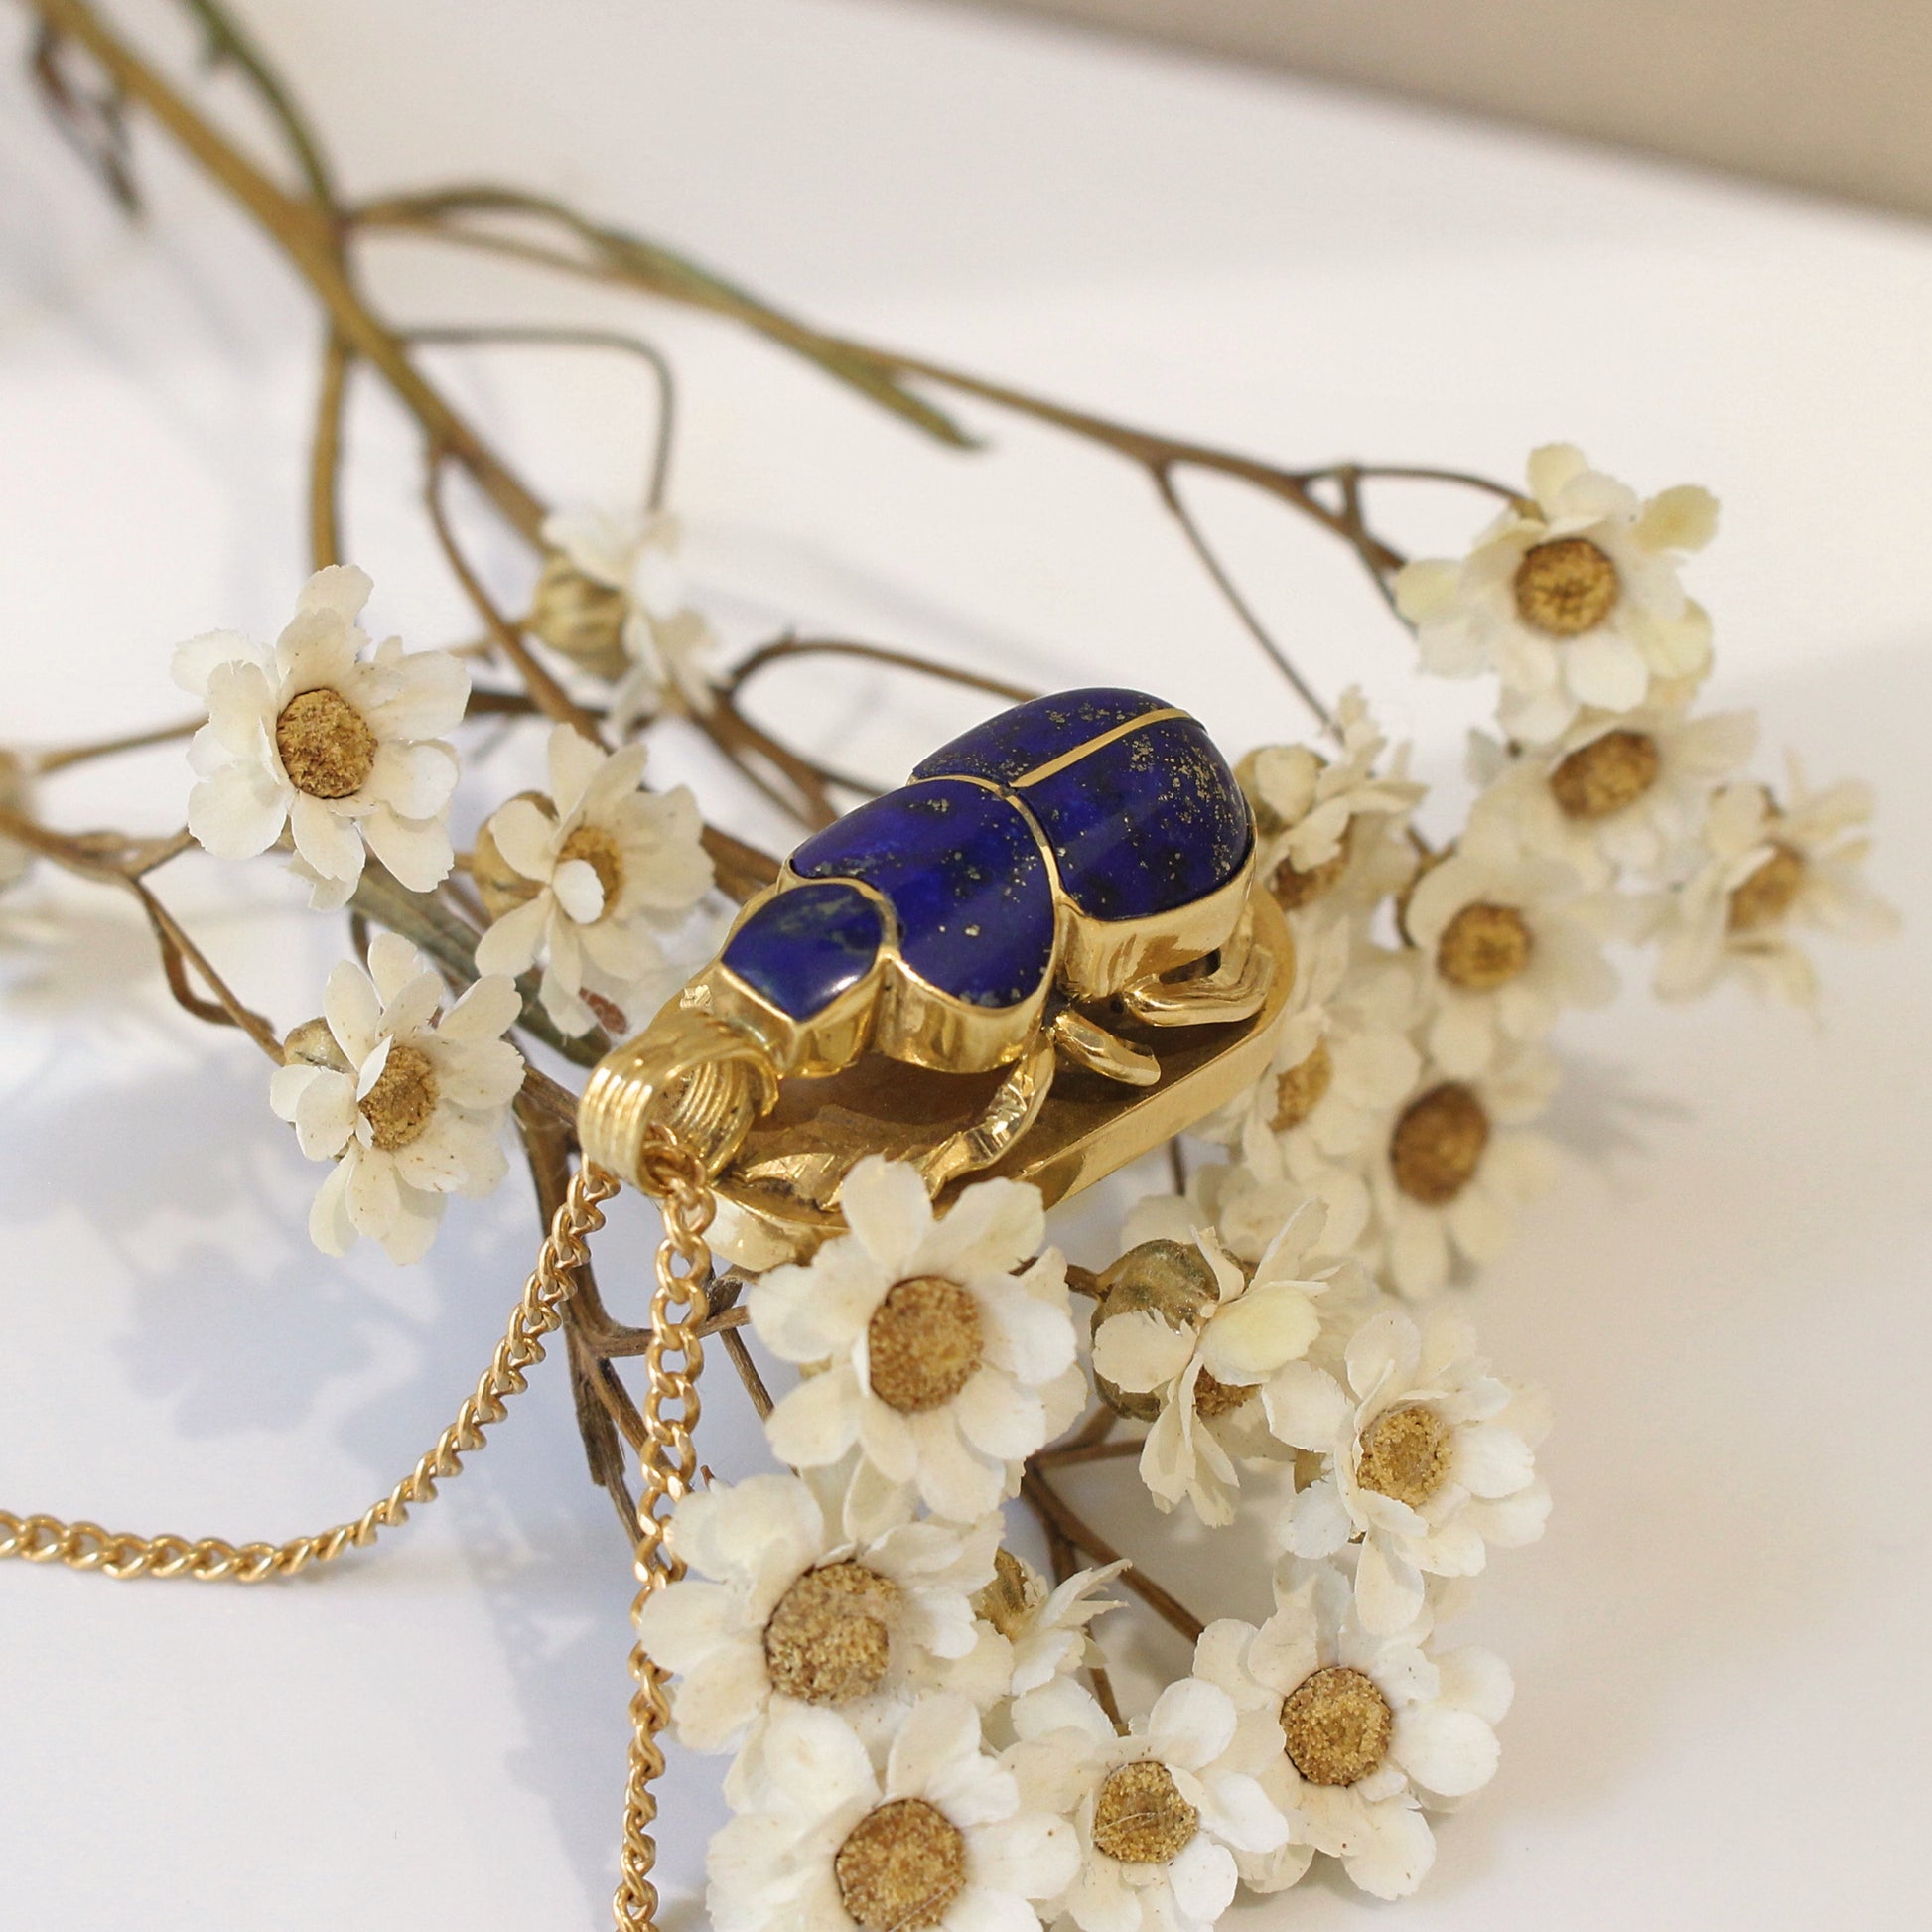 Pendentif scarbée en or jaune et lapis lazuli/ bijou ancien/ pendentif pour collier